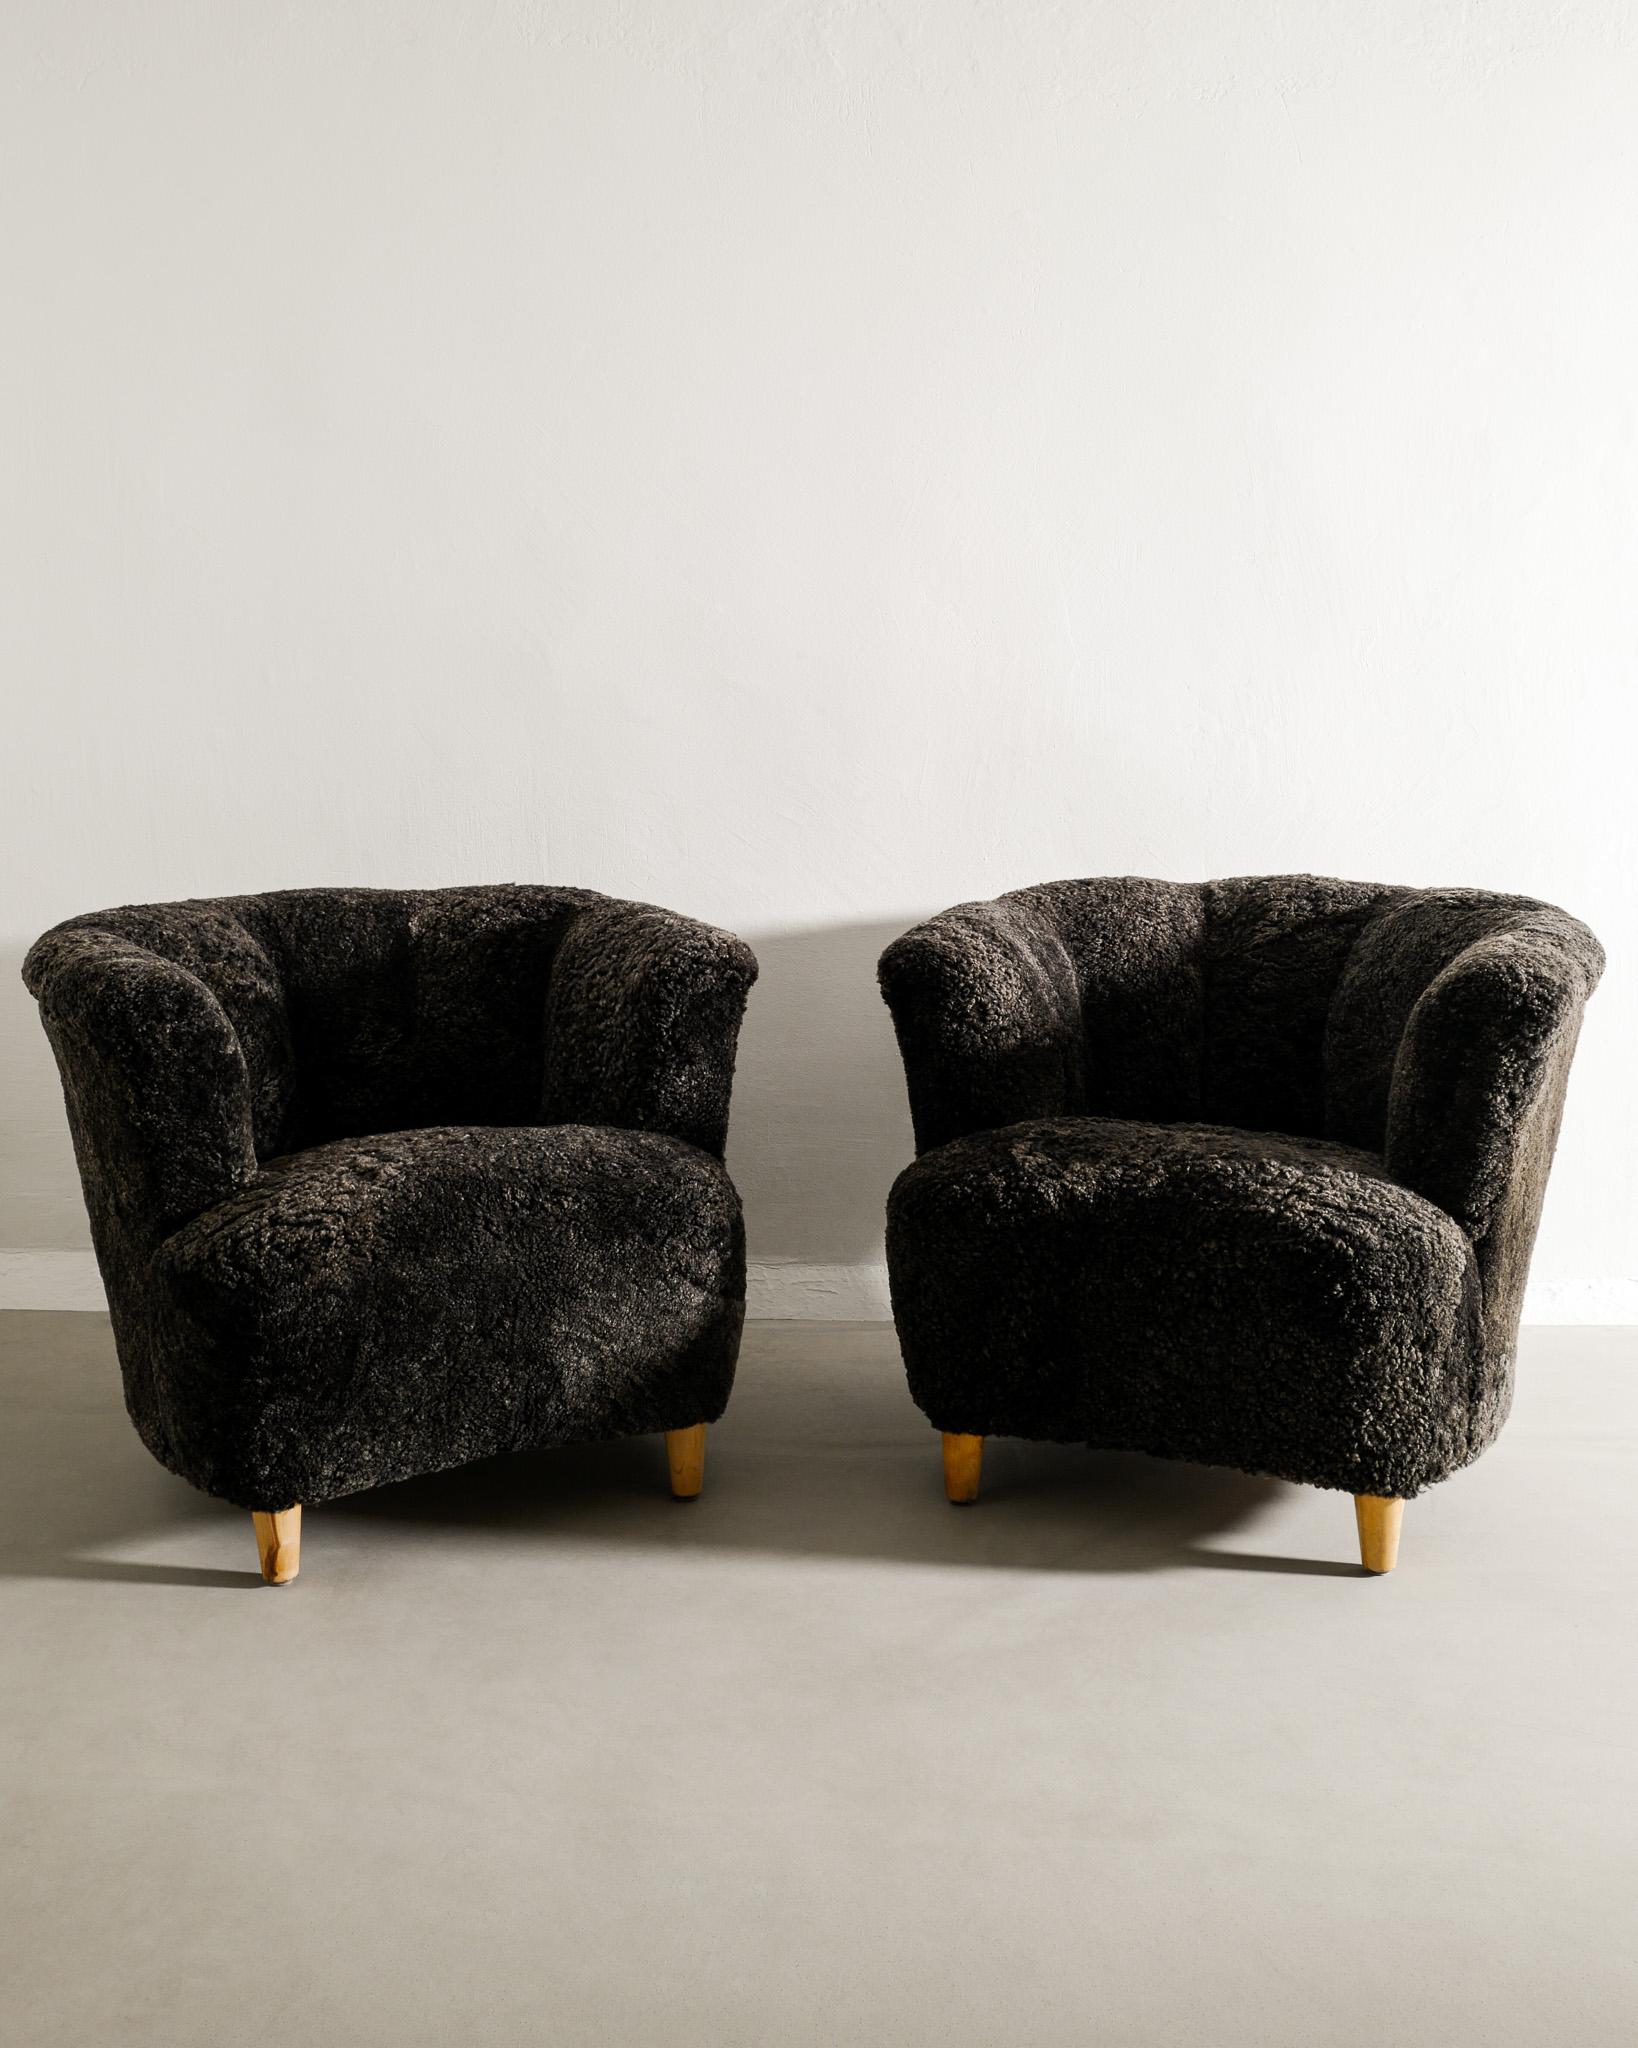 Rare paire de fauteuils modernes suédois incurvés dans le style d'Otto Schultz, produits en Suède dans les années 1940. En bon état et nouvellement restauré et tapissé en peau de mouton couleur charbon de bois. 

Dimensions : H : 68 cm / 27